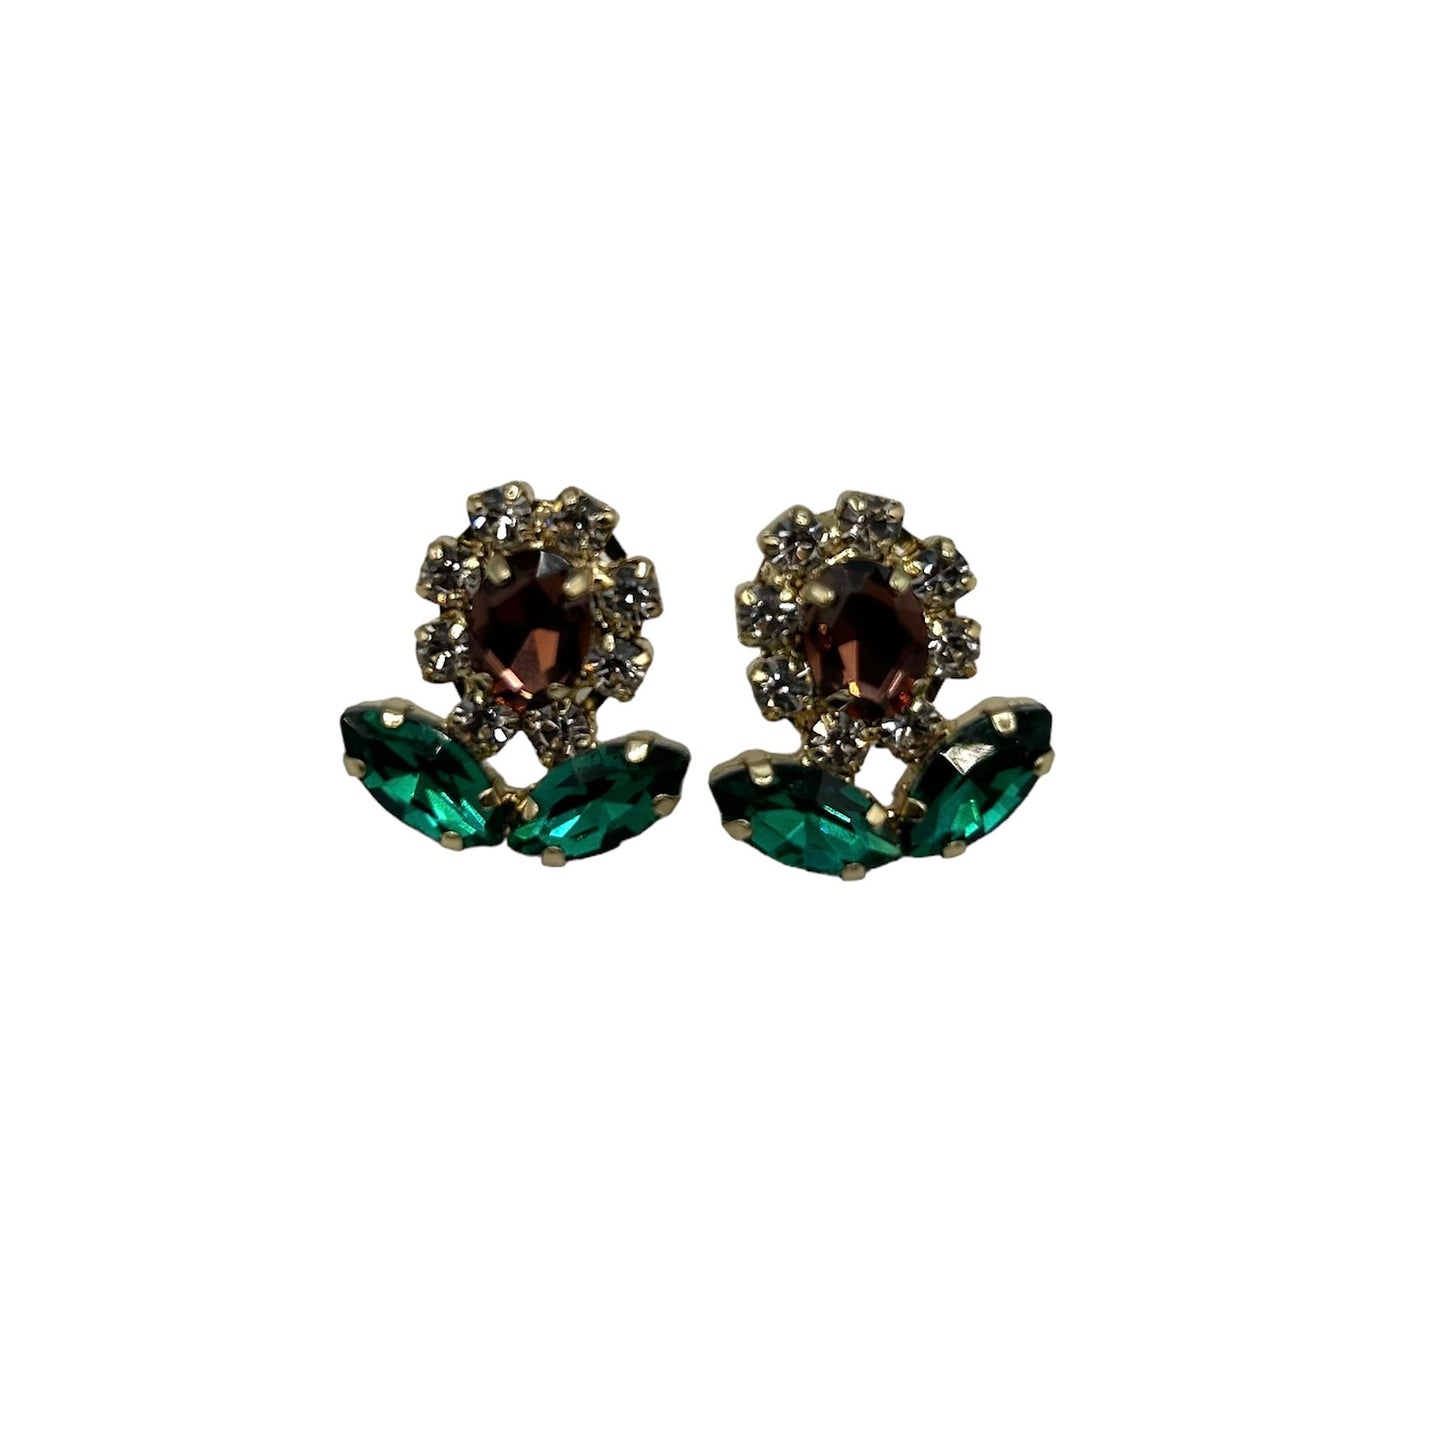 Jewelled daisy earrings